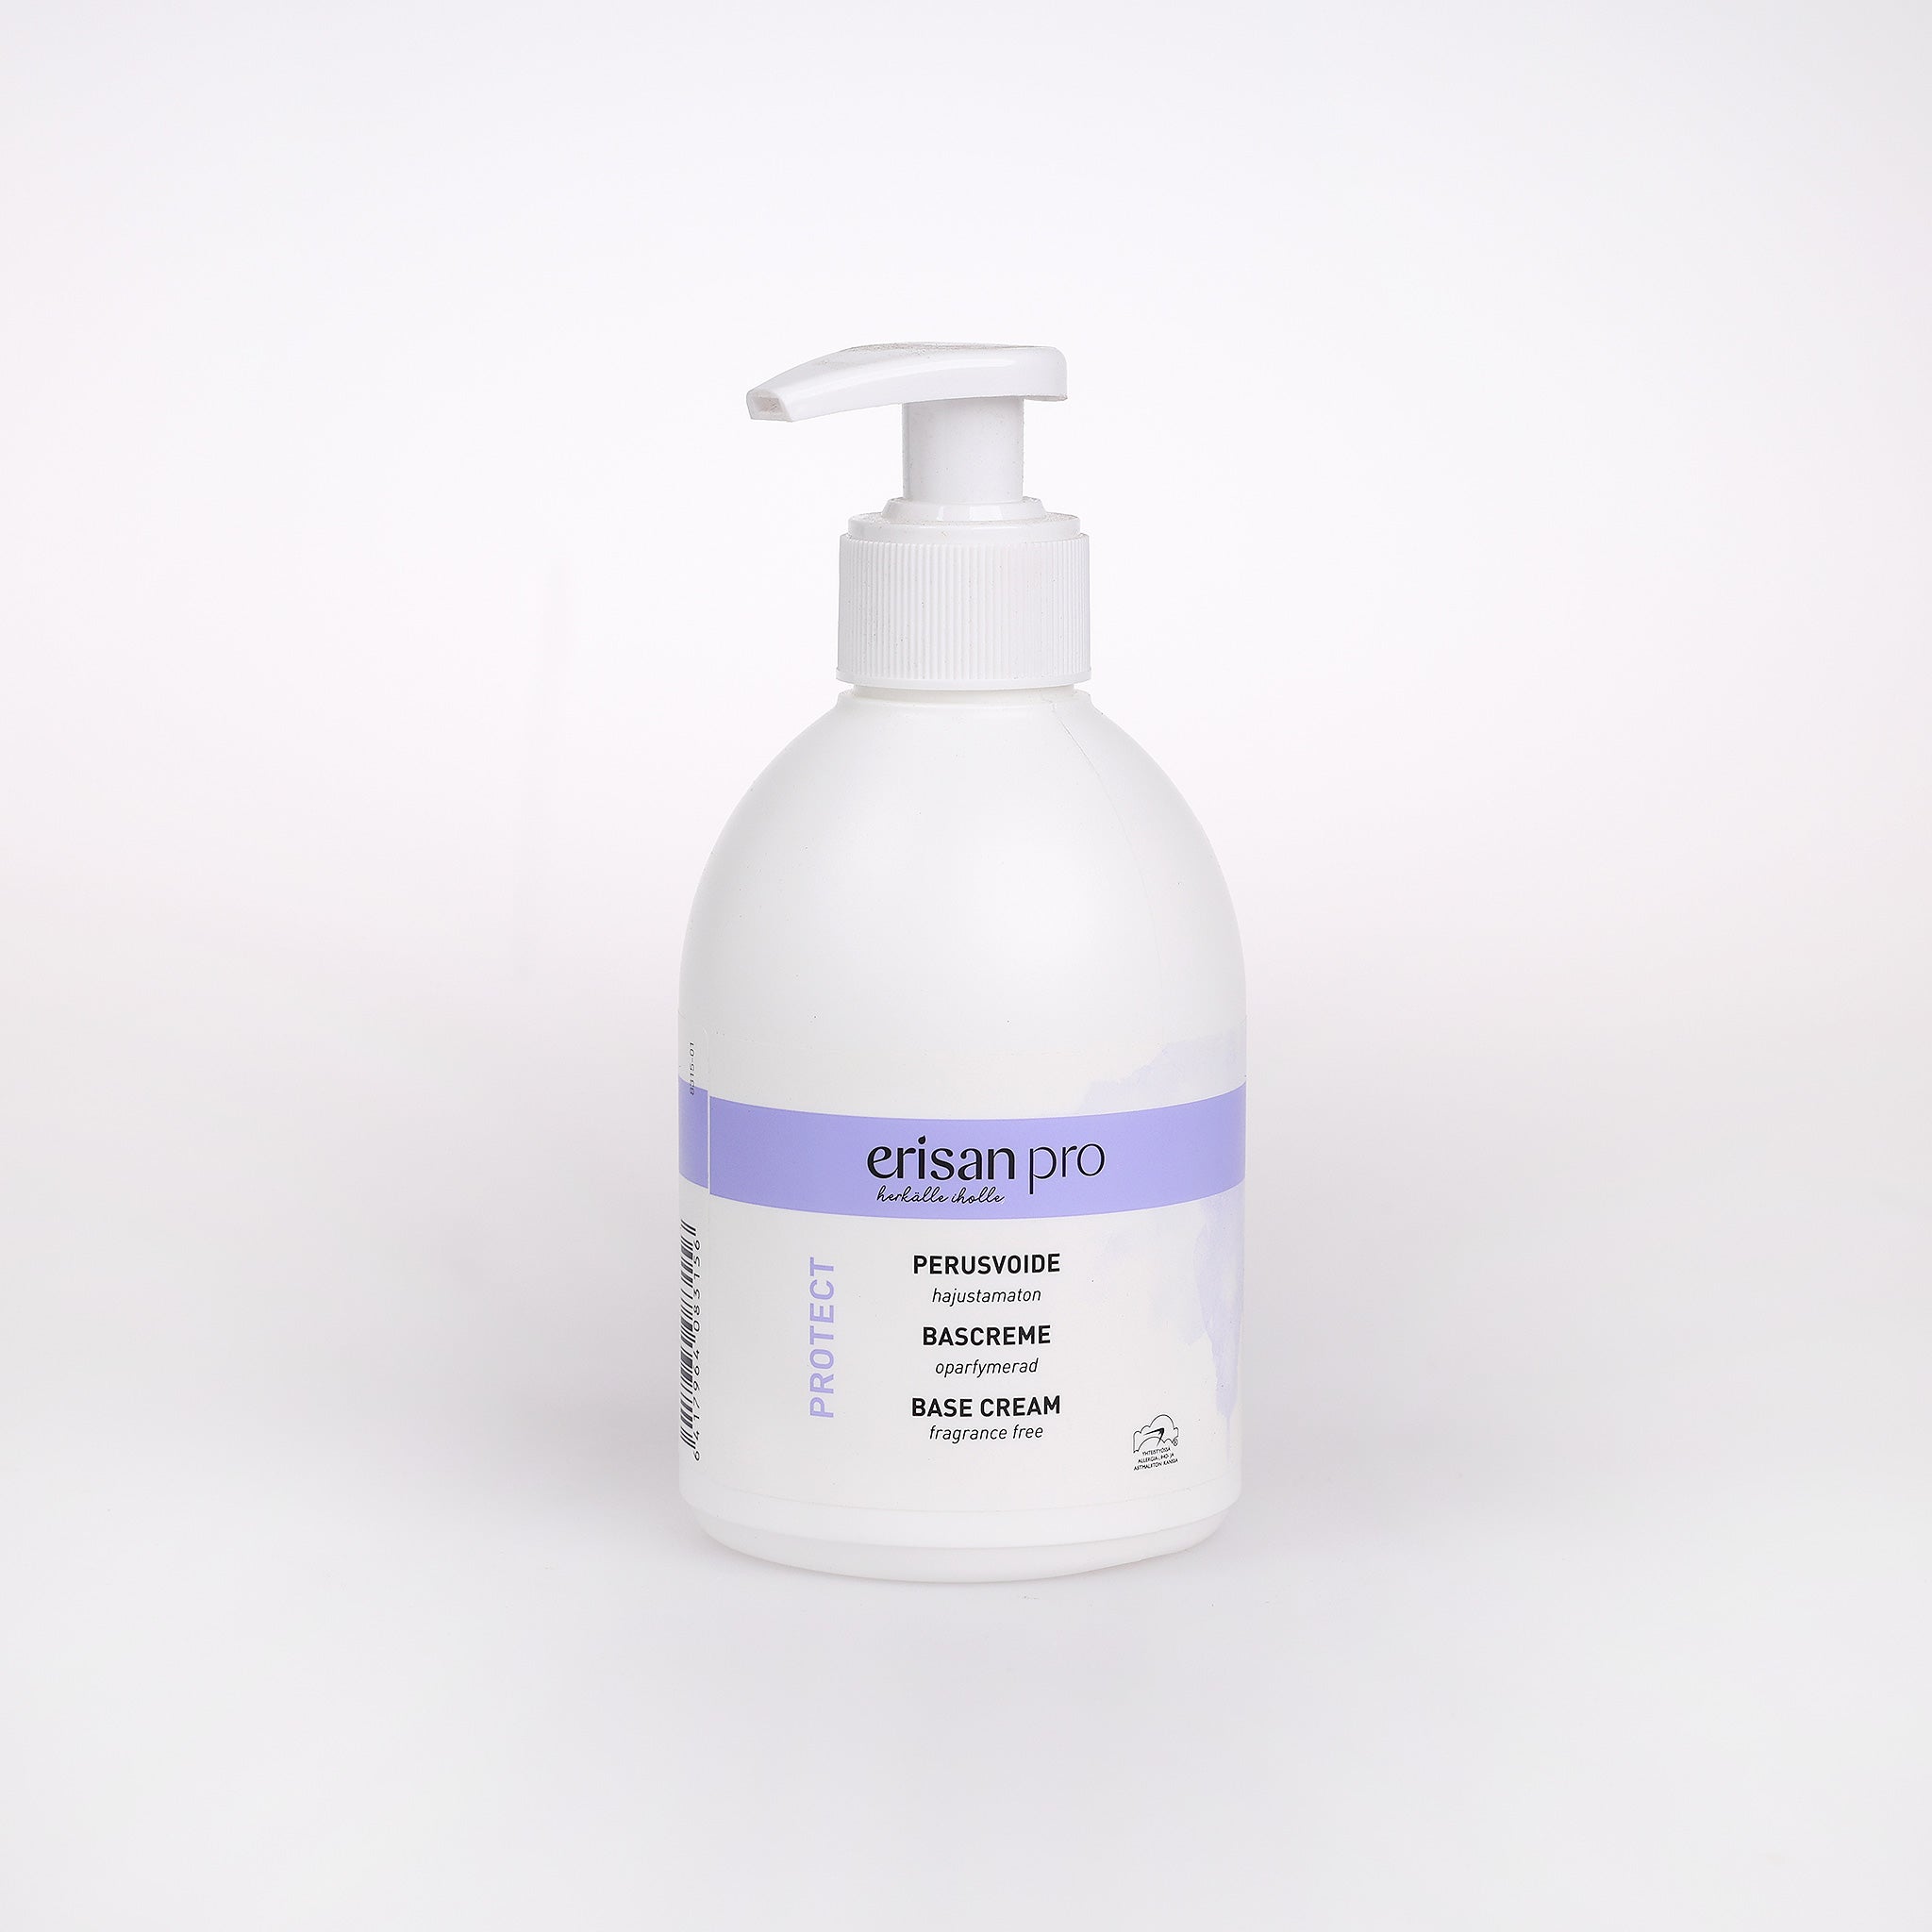 Erisan Base Cream, er en fugtgivende og beskyttende håndcreme. Den beskytter huden mod tørhed, kemikalier m.m. og er uden parfume.